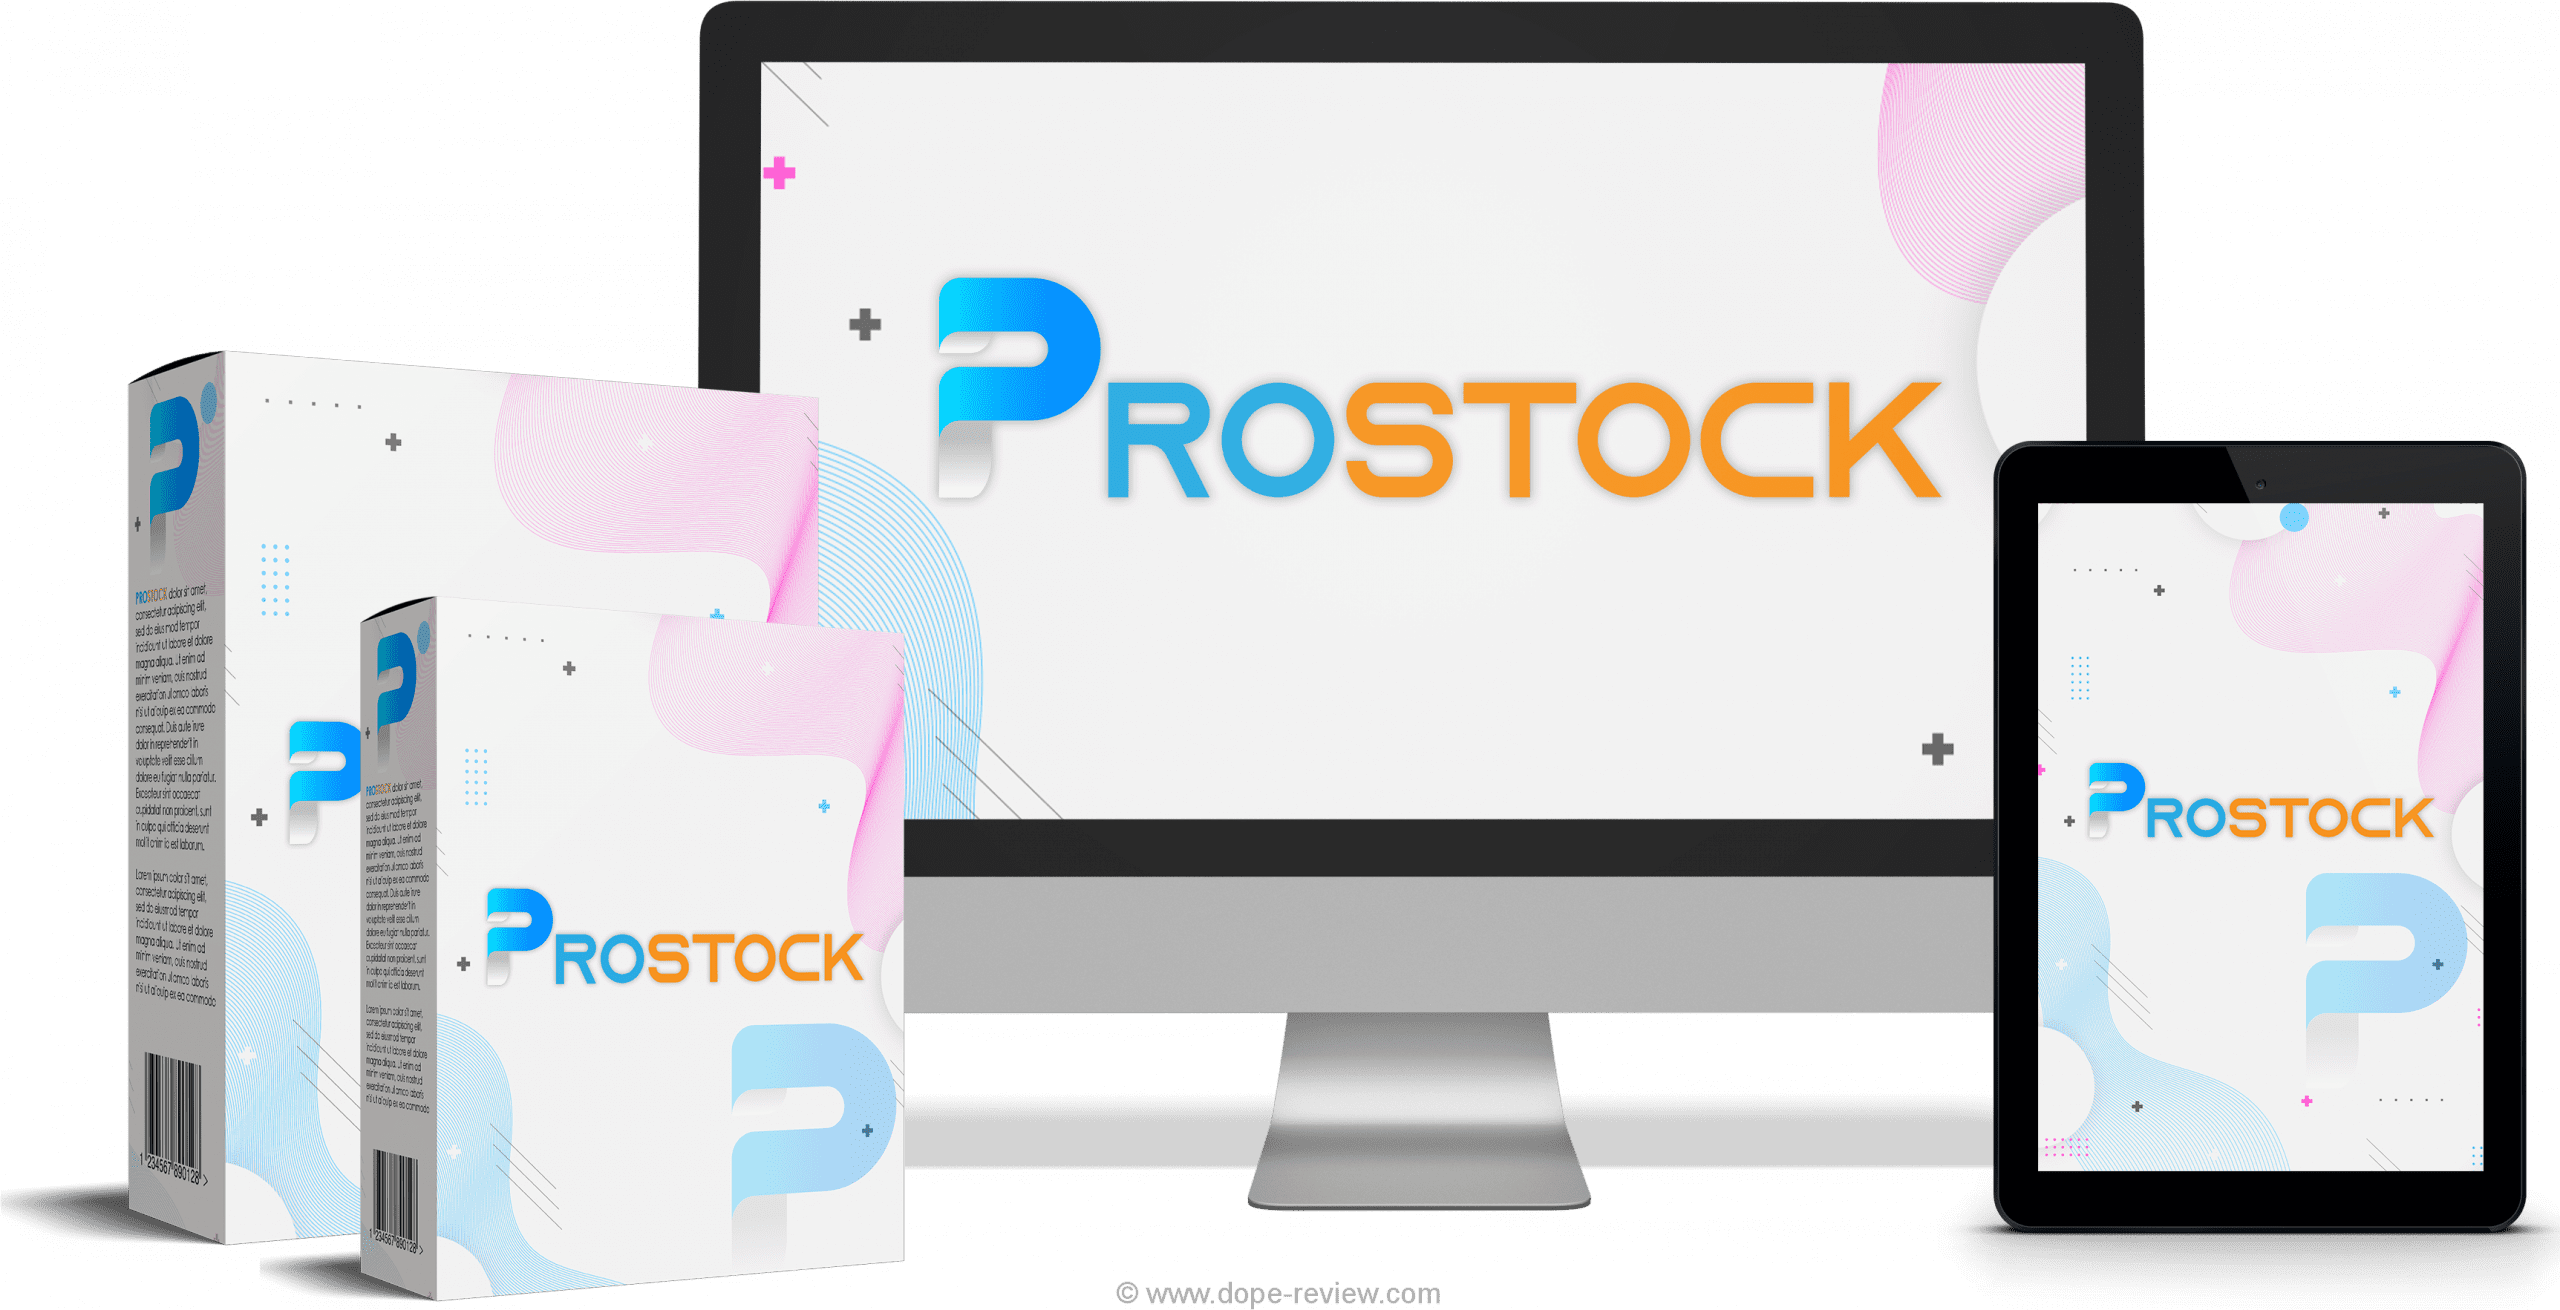 ProStock Review